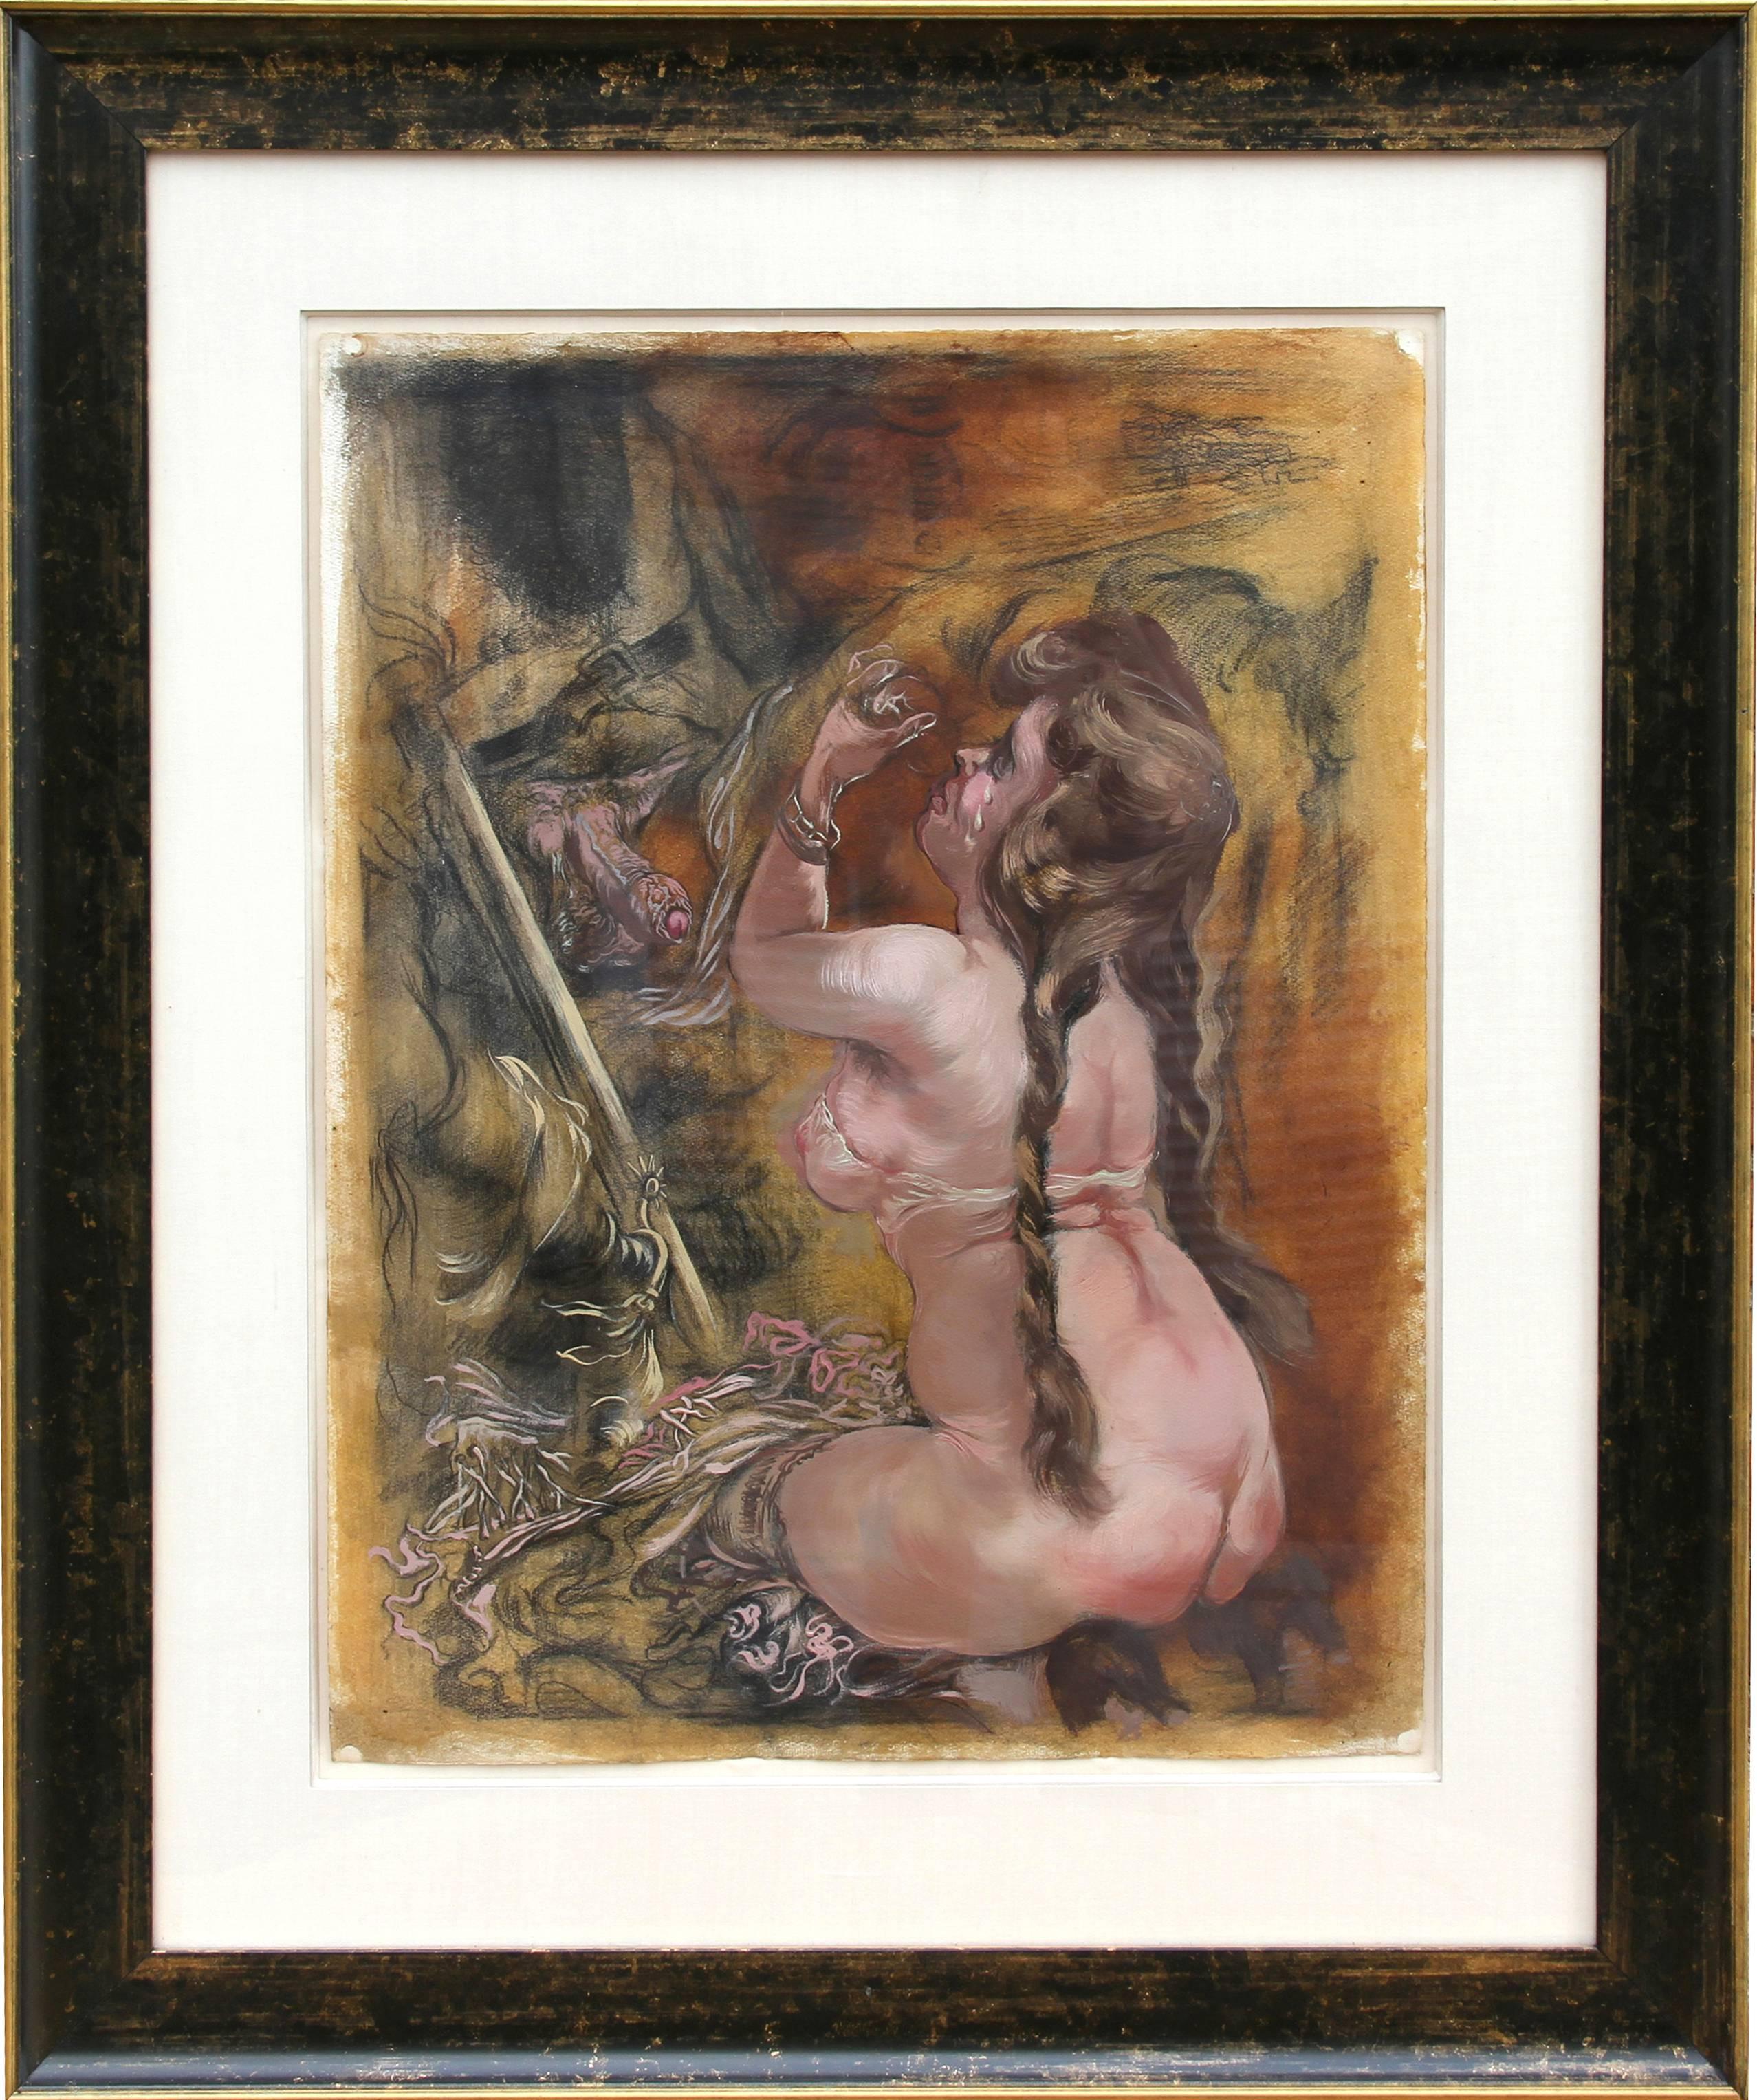 Artiste :	George Grosz, Allemand (1893 - 1959)
Titre : Excité	
Année : 1940 
Moyen d'expression : Huile sur papier, signée à gauche.
Format du papier : 24 x 18 pouces (60,96 x 45,72 cm)
Taille du cadre : 36 x 30 pouces 

Provenance : Succession de